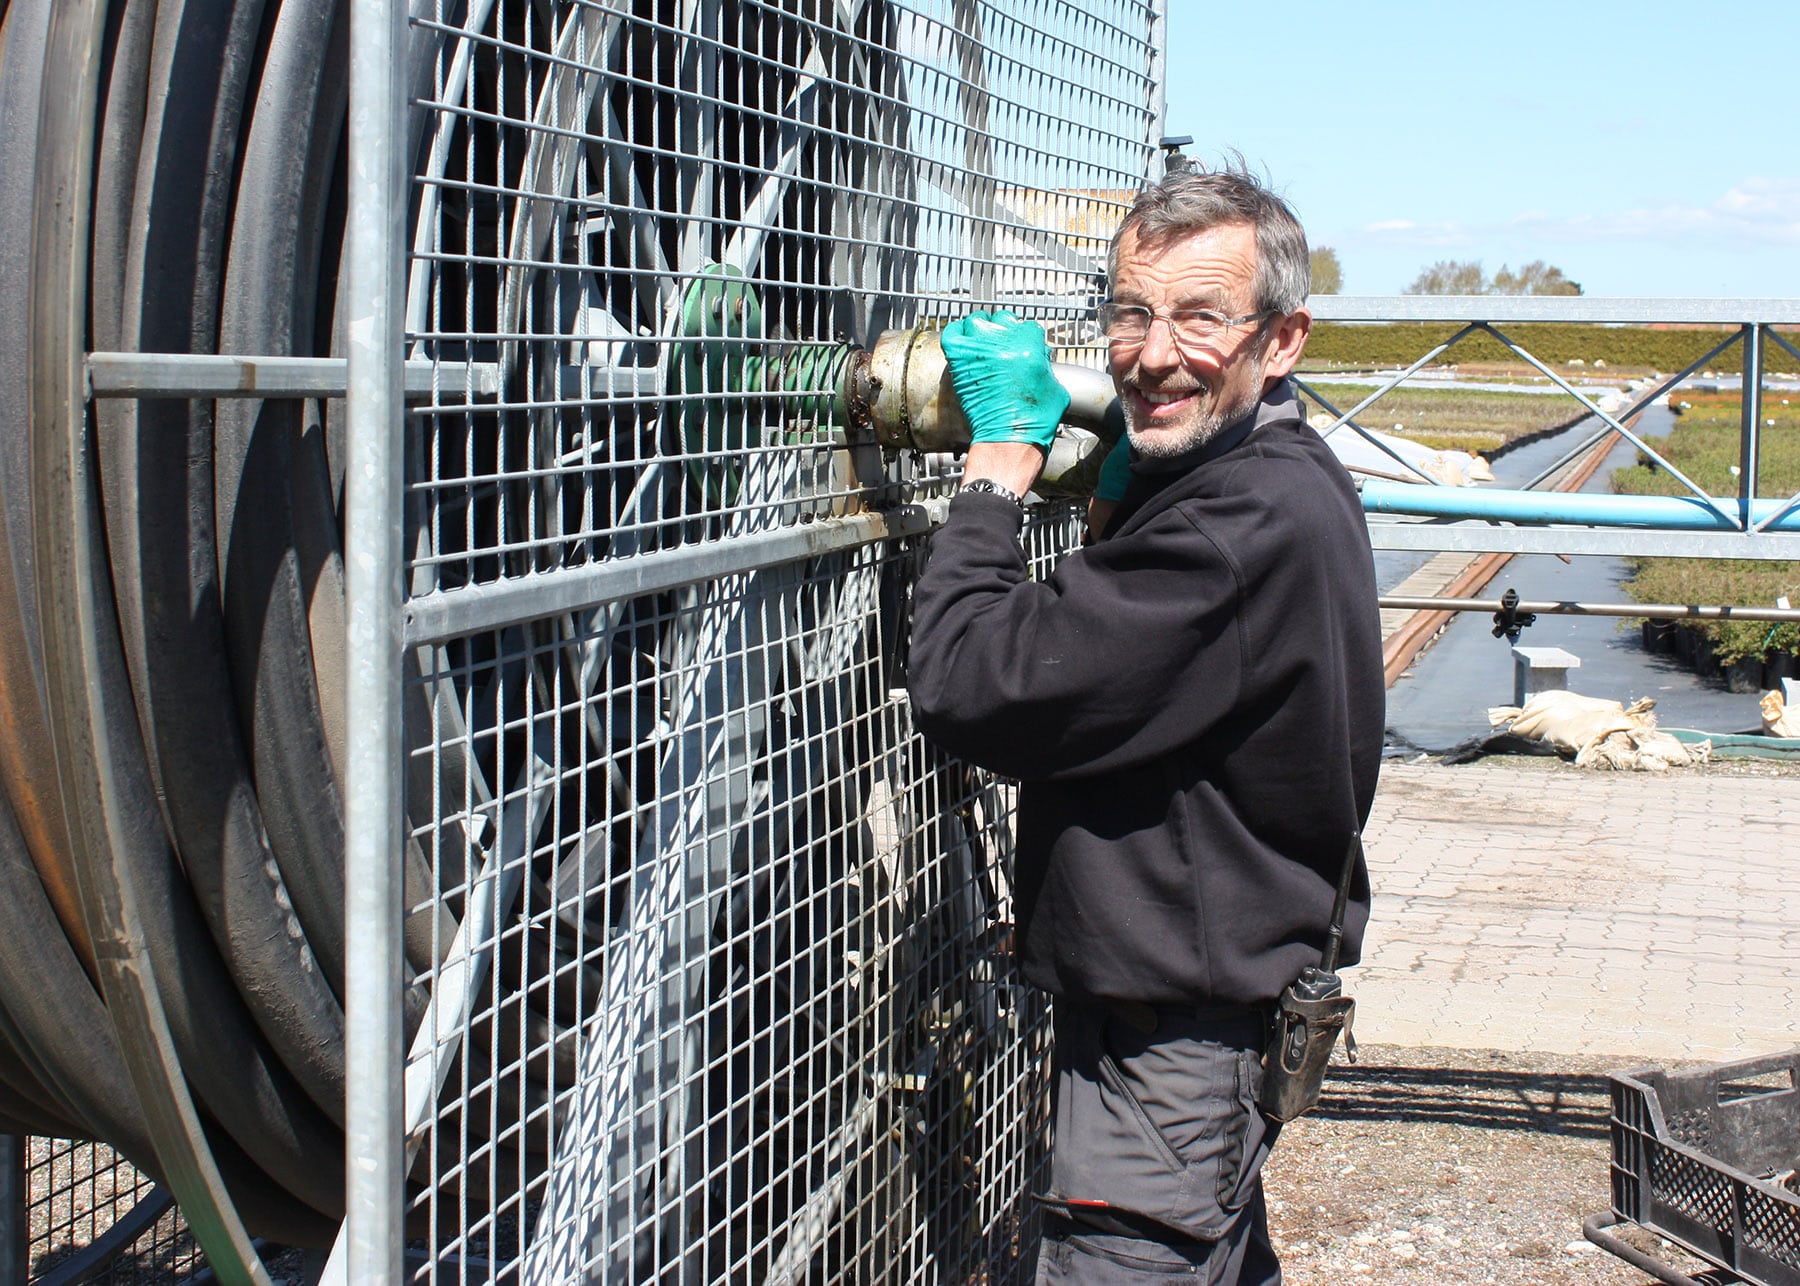 Vedligehold er også en del af dagligdagen. Her er reparerer Niels vandingsbom.